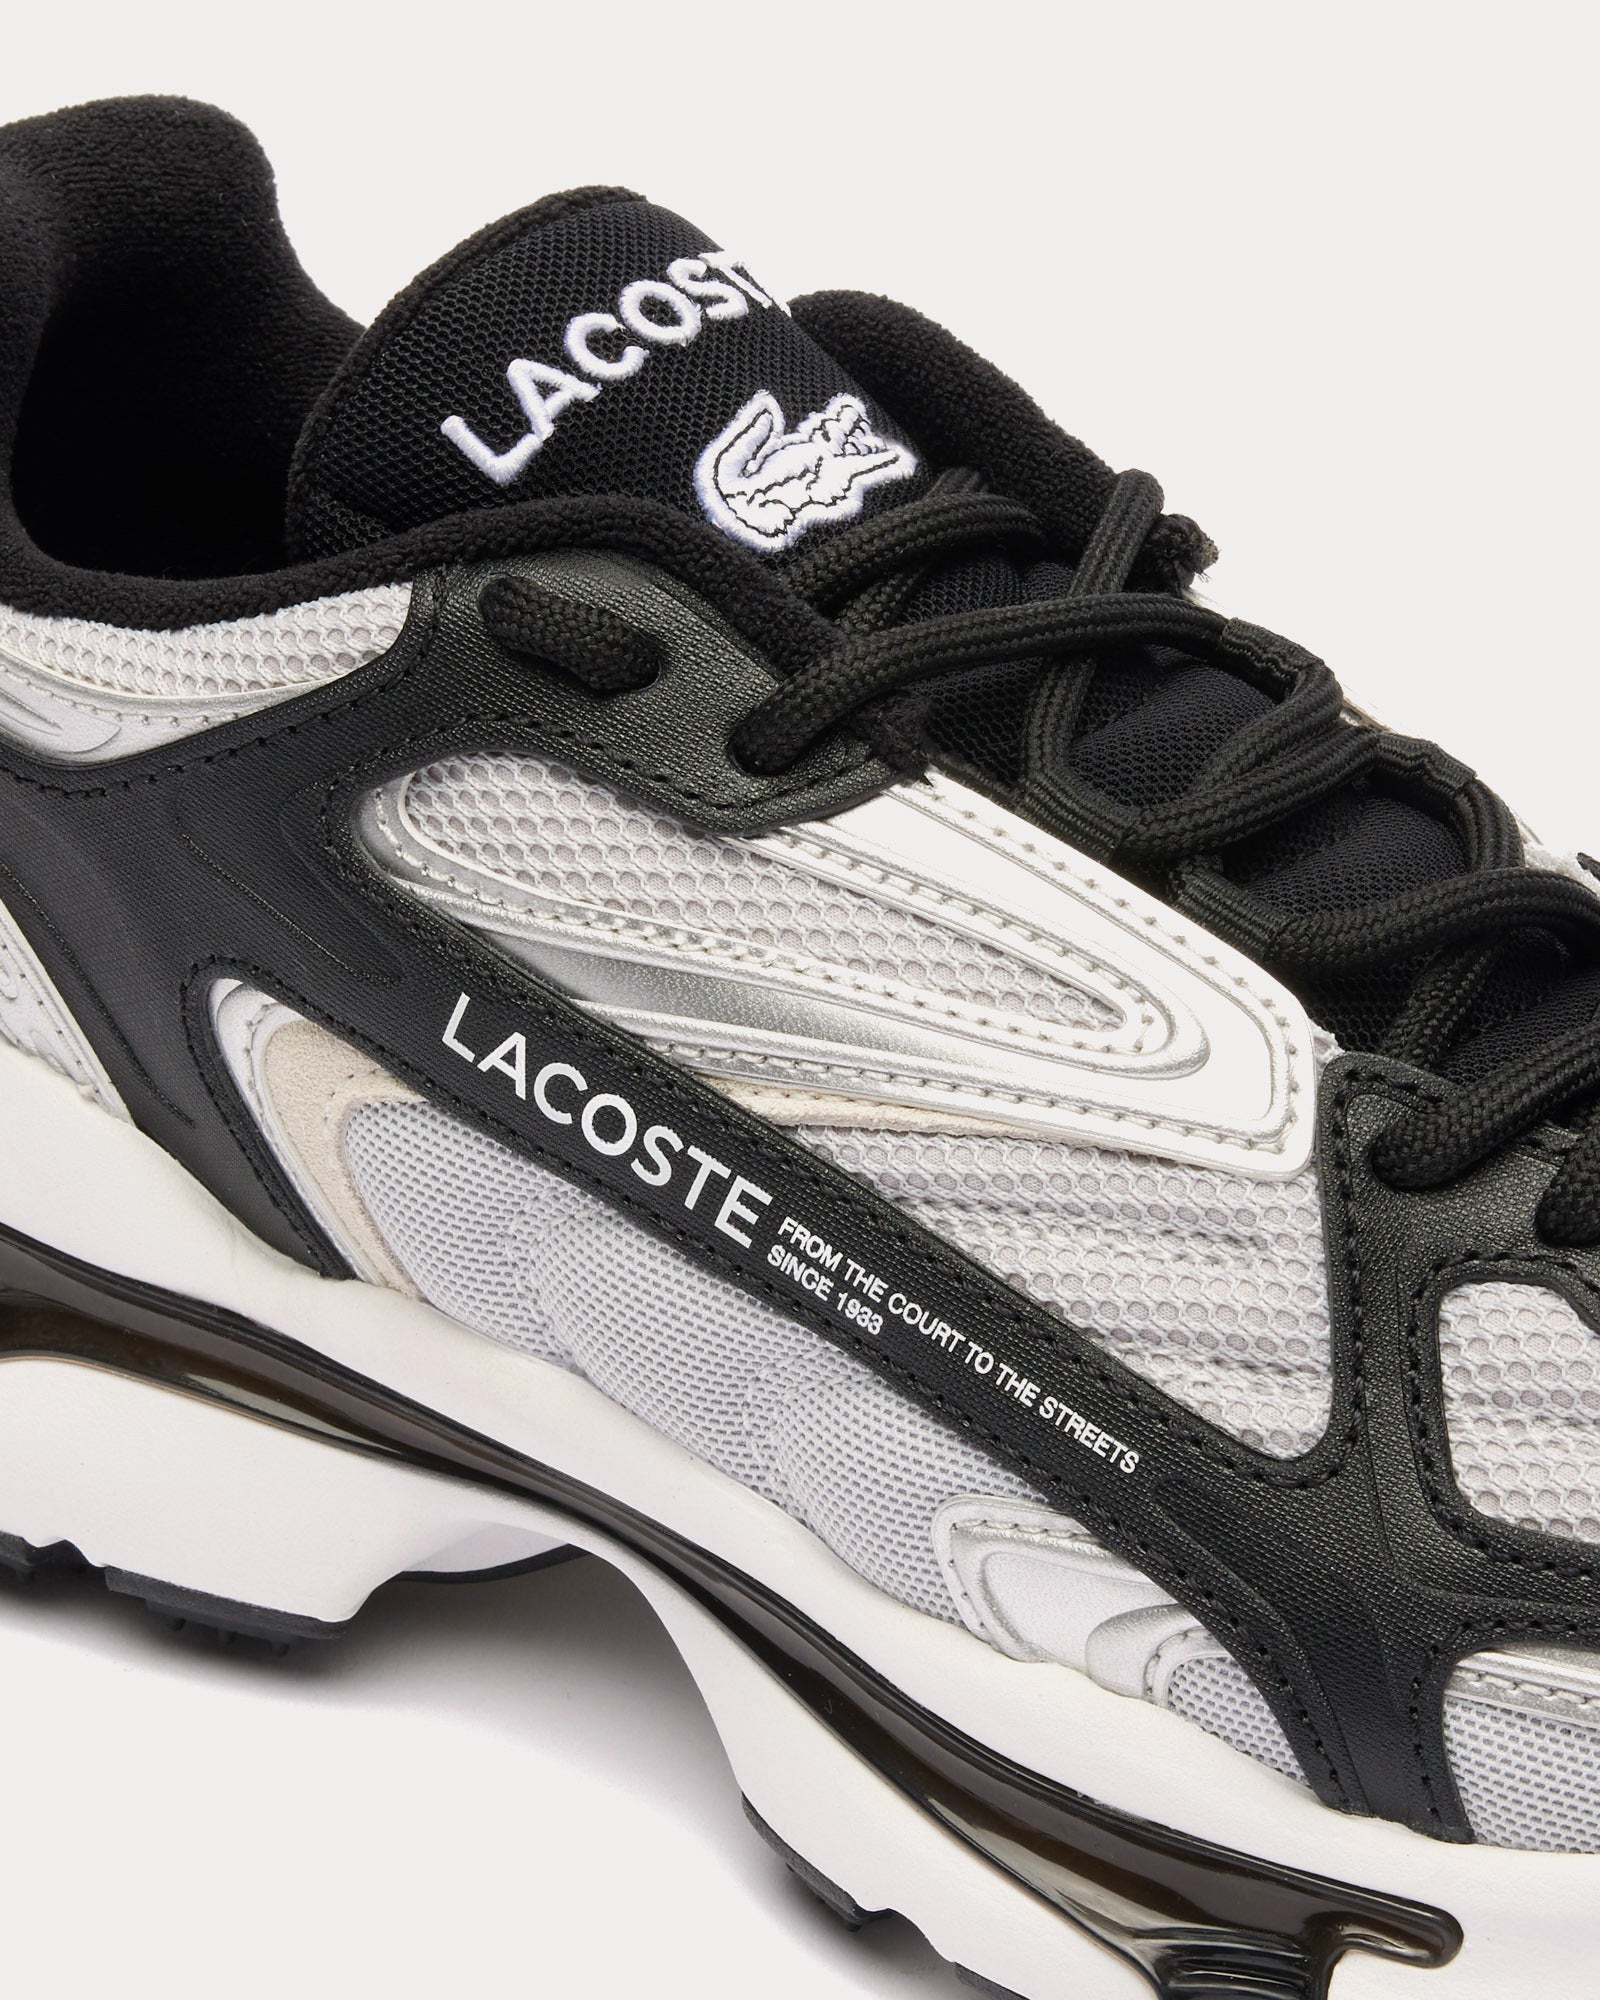 Lacoste - L003 2K24 Black / Grey / Silver Low Top Sneakers